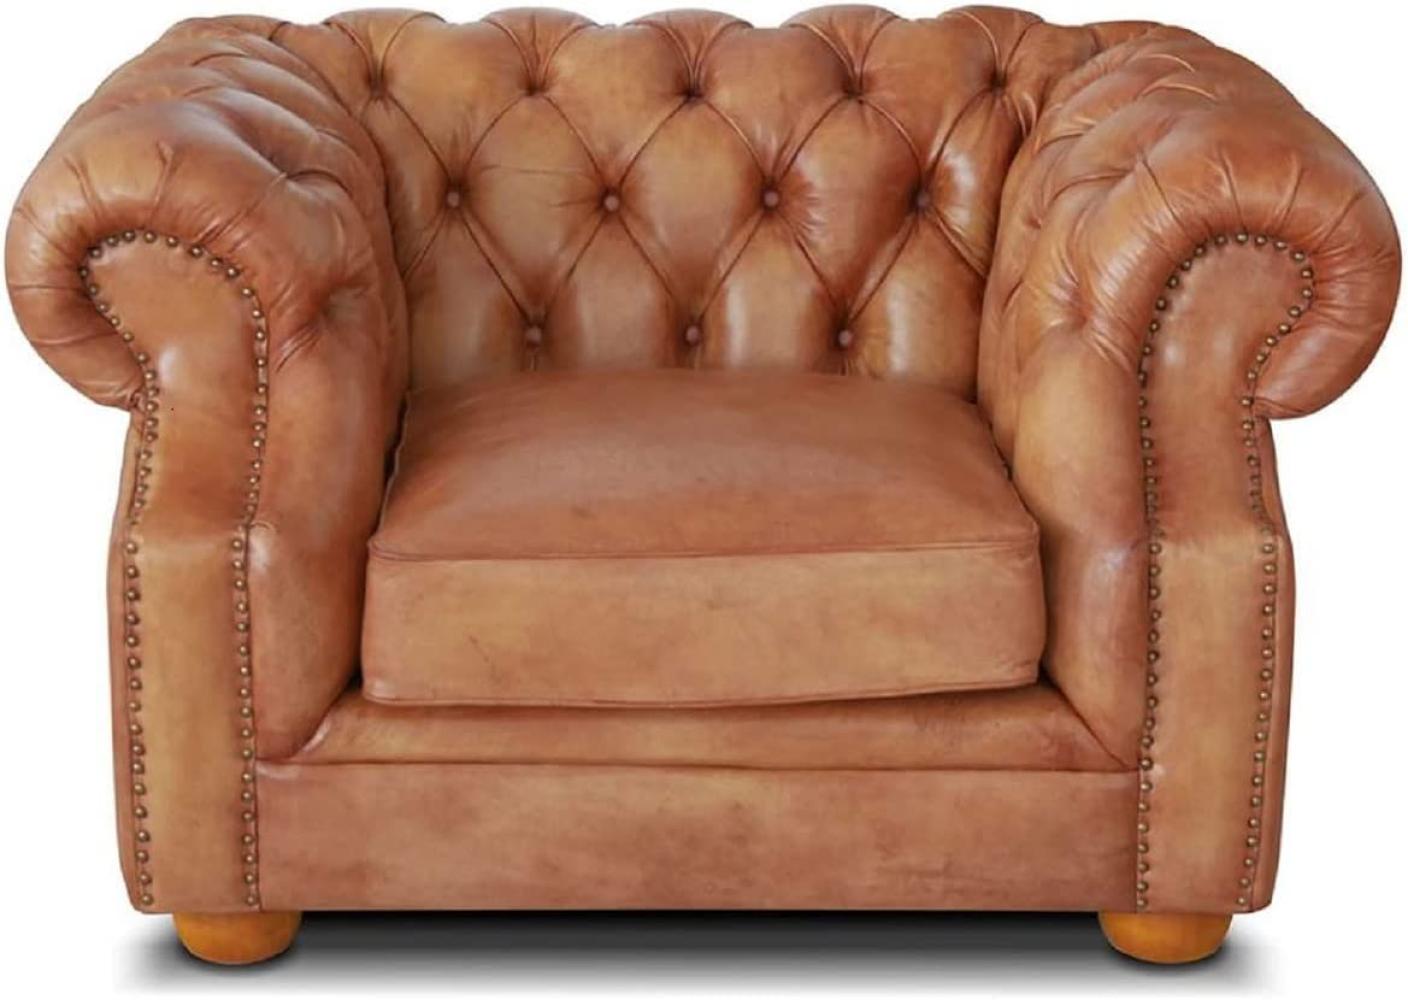 Casa Padrino Luxus Chesterfield Leder Sessel 125 x 100 x H. 80 cm - Verschiedene Farben - Echtleder Wohnzimmer Sessel - Chesterfield Wohnzimmer Möbel Bild 1